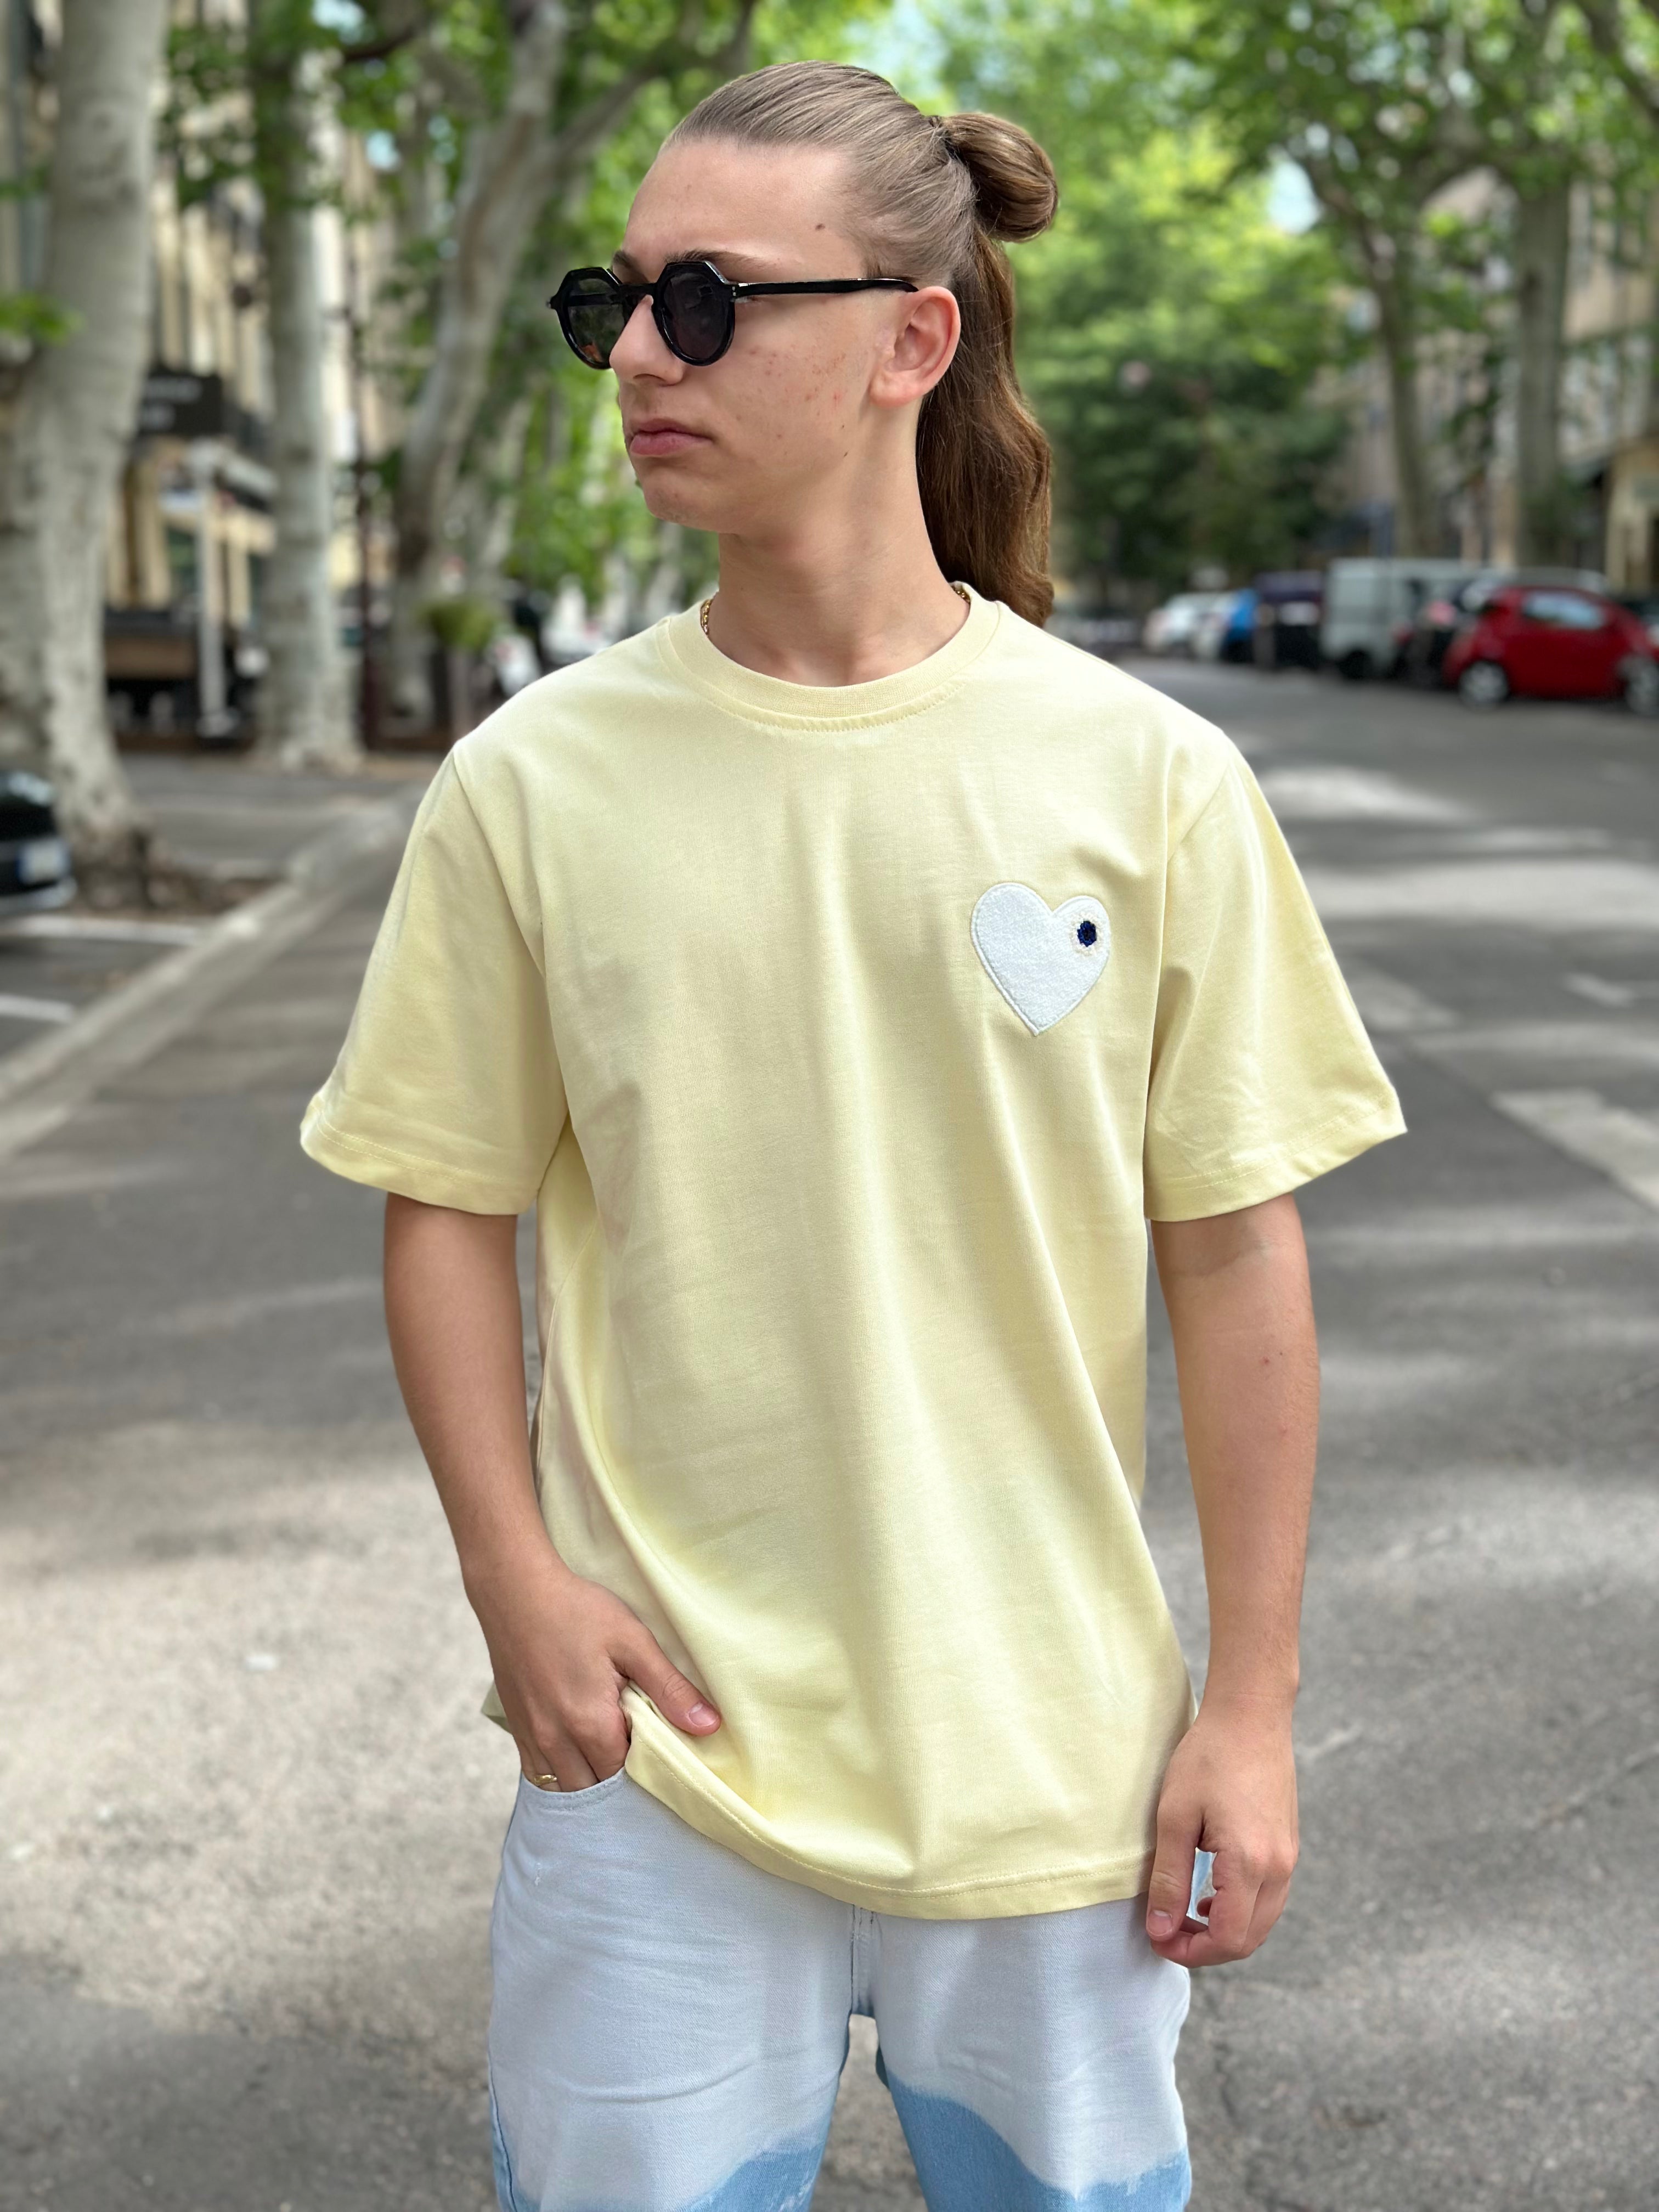 ADJ - T-shirt Jaune coeur Blanc